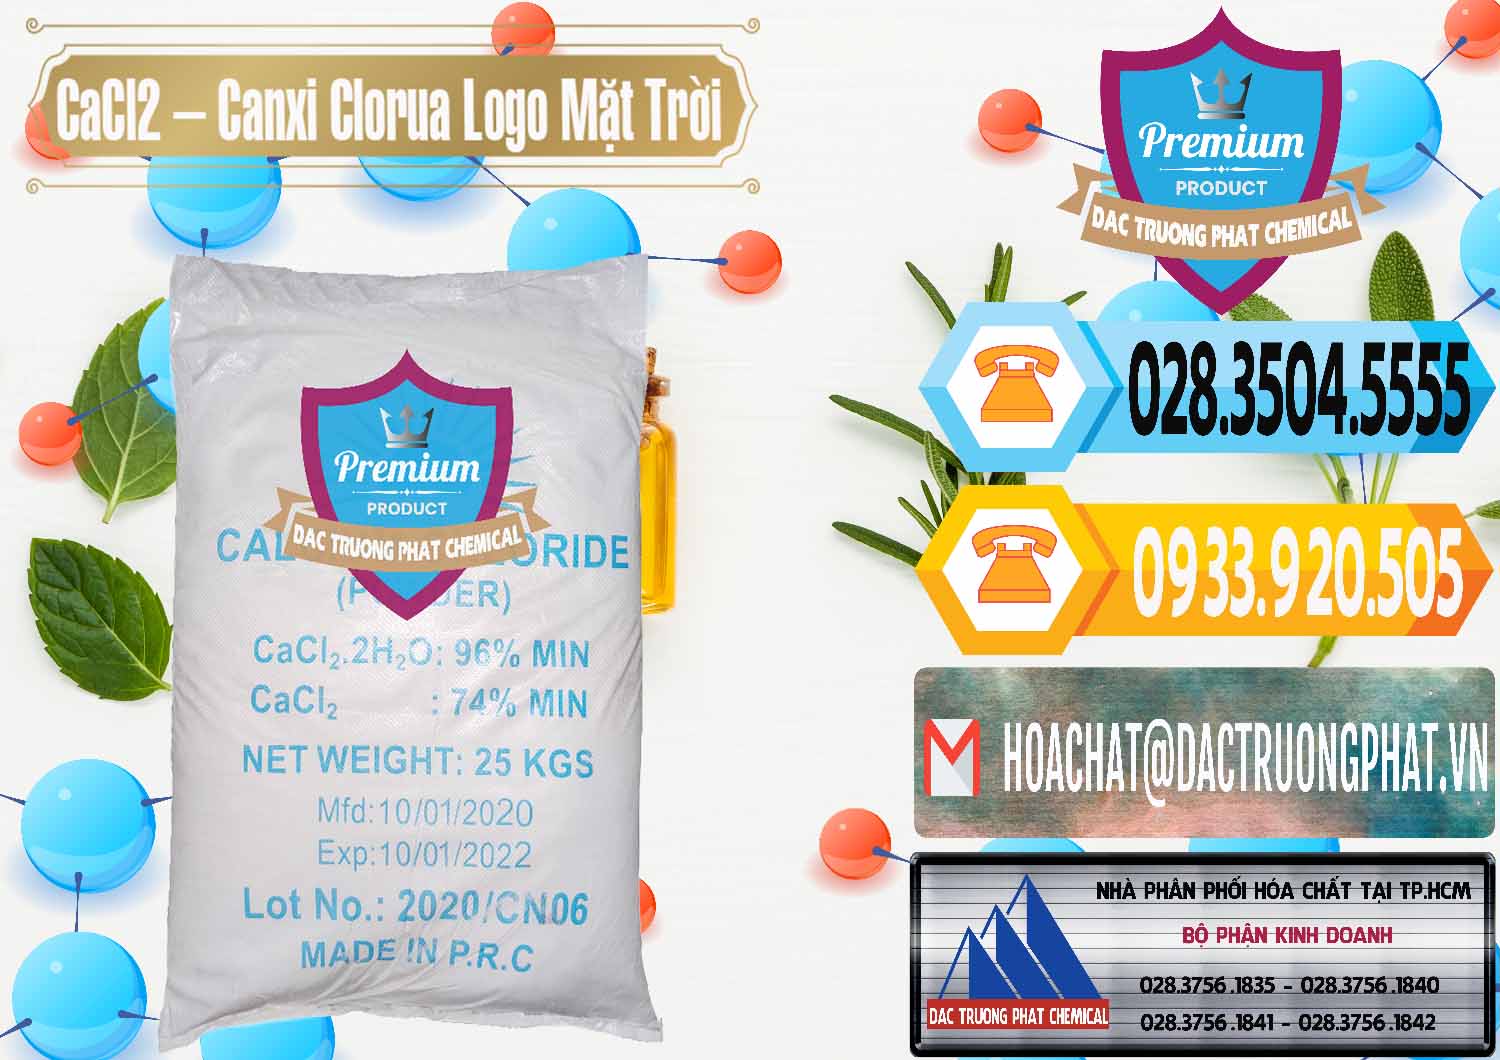 Đơn vị chuyên bán ( phân phối ) CaCl2 – Canxi Clorua 96% Logo Mặt Trời Trung Quốc China - 0041 - Nơi phân phối & cung cấp hóa chất tại TP.HCM - hoachattayrua.net